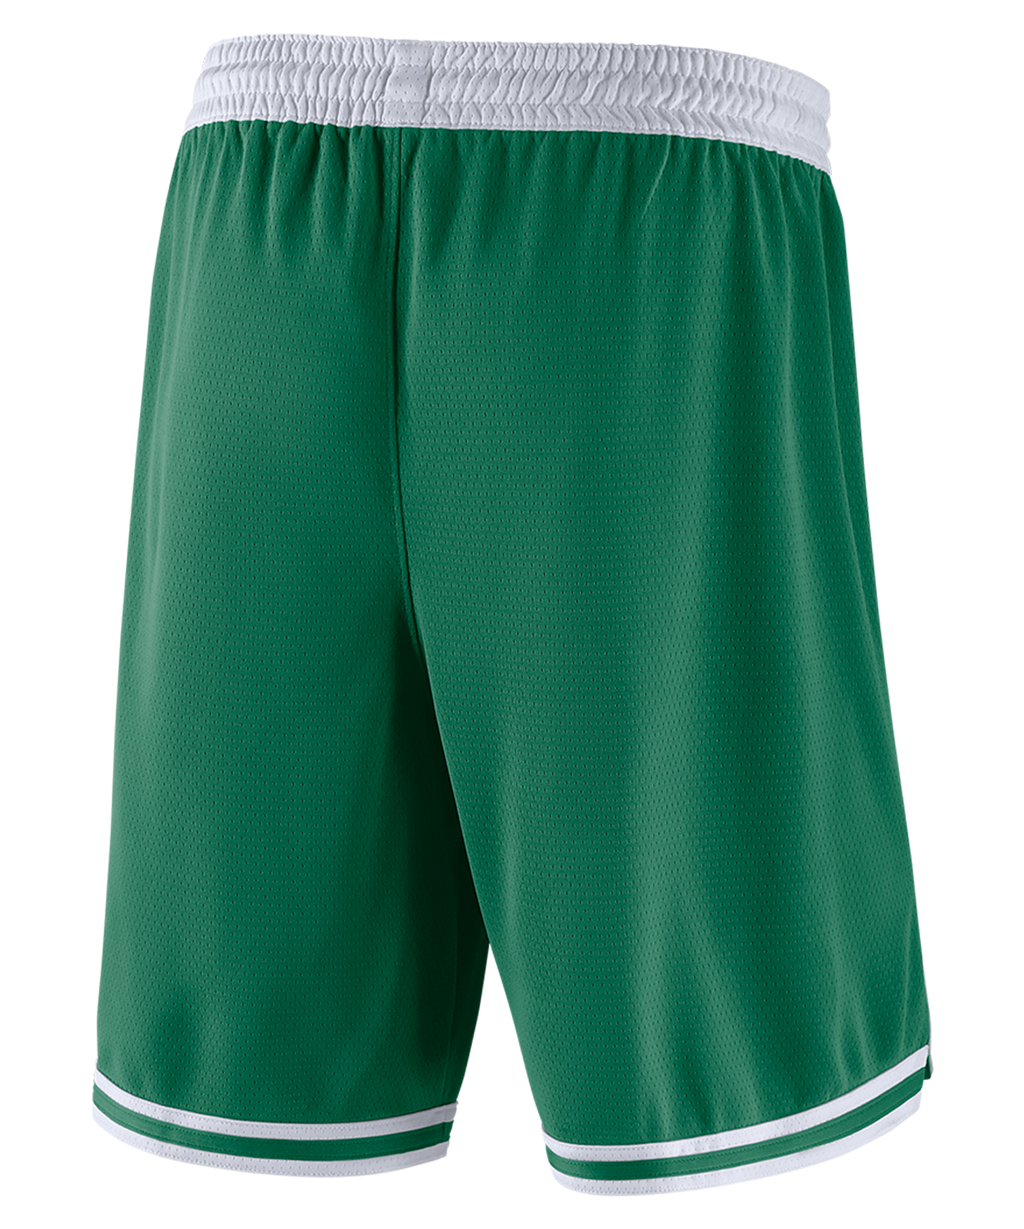 Boston Celtics Nike Icon Edition Shorts